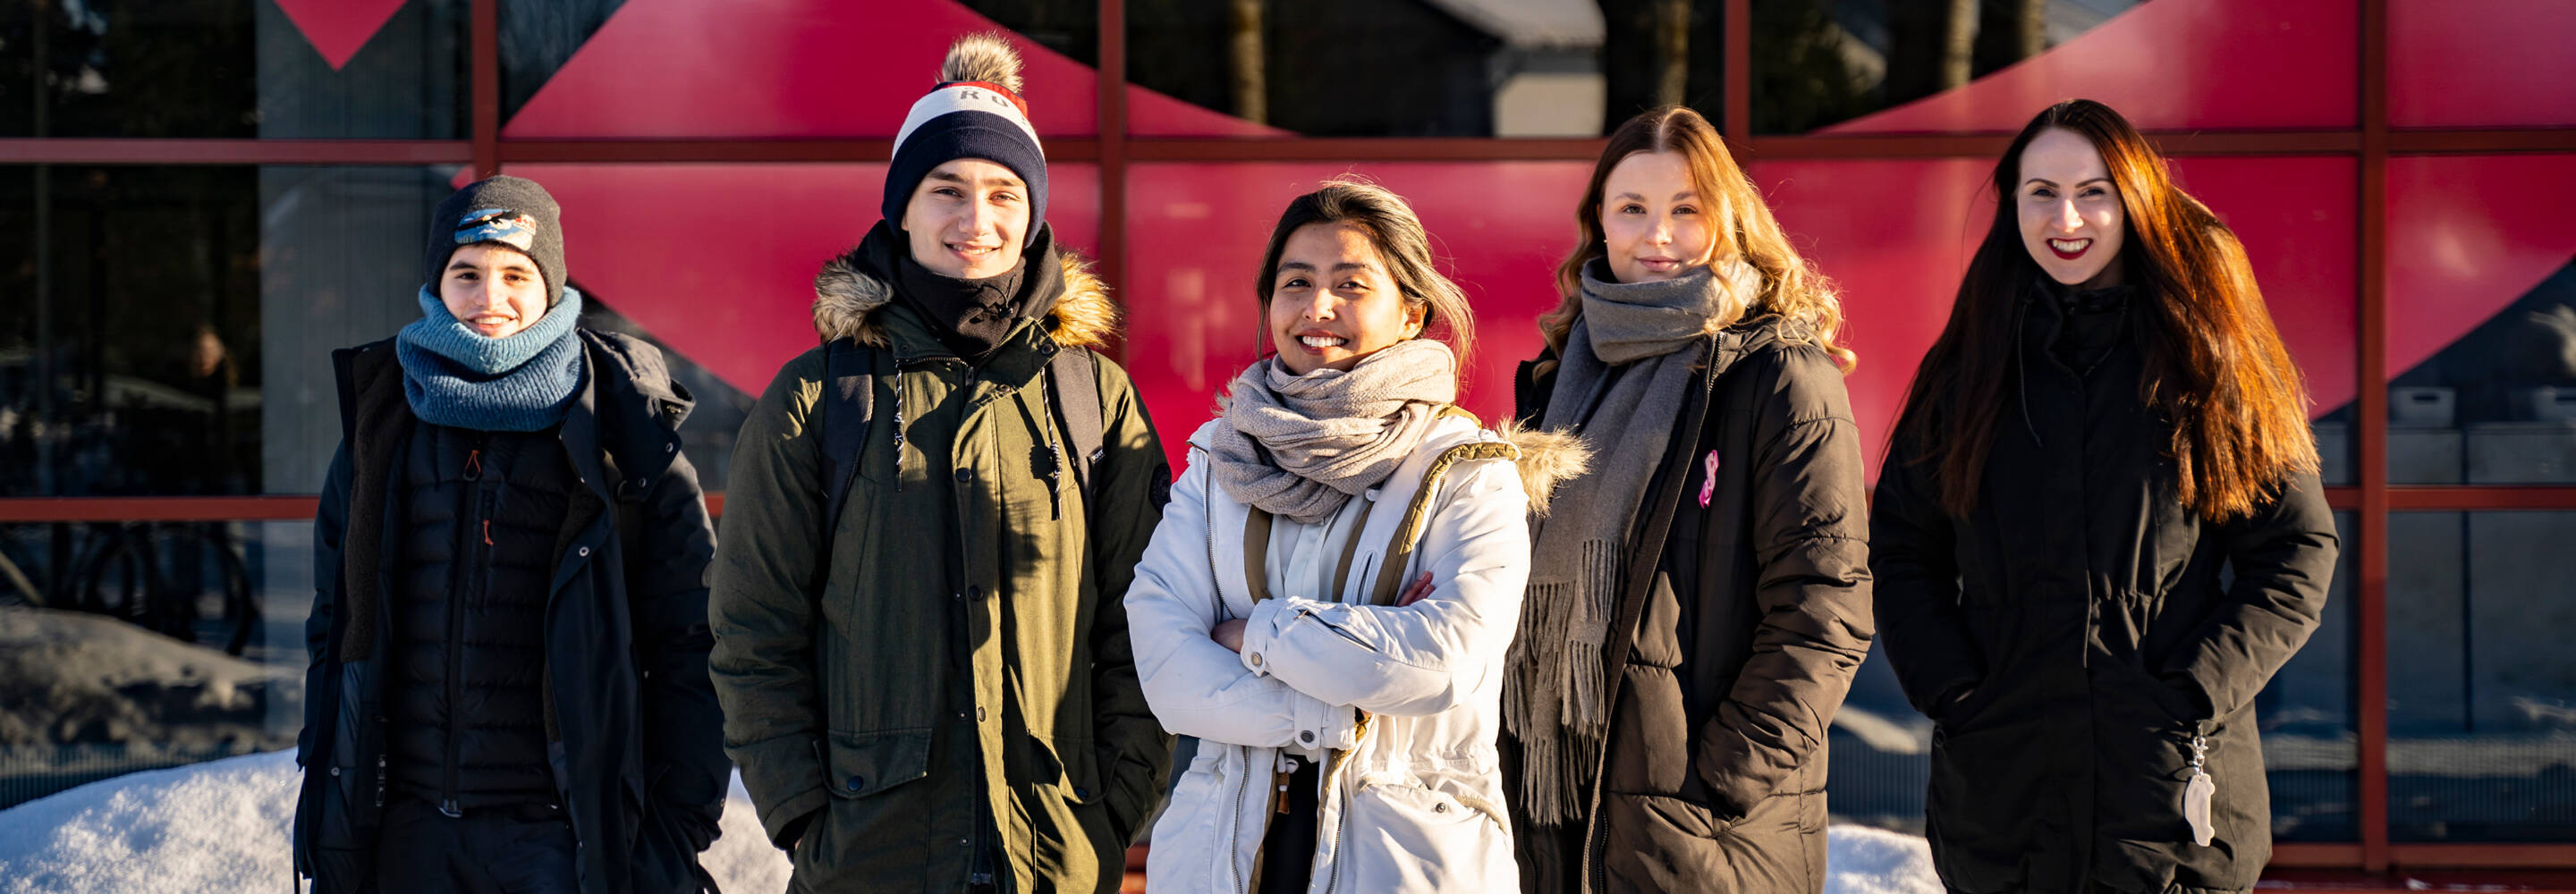 Viisi opiskelijaa poseeraa kameralle hymyillen Talonpojankadun kampuksen edustalla